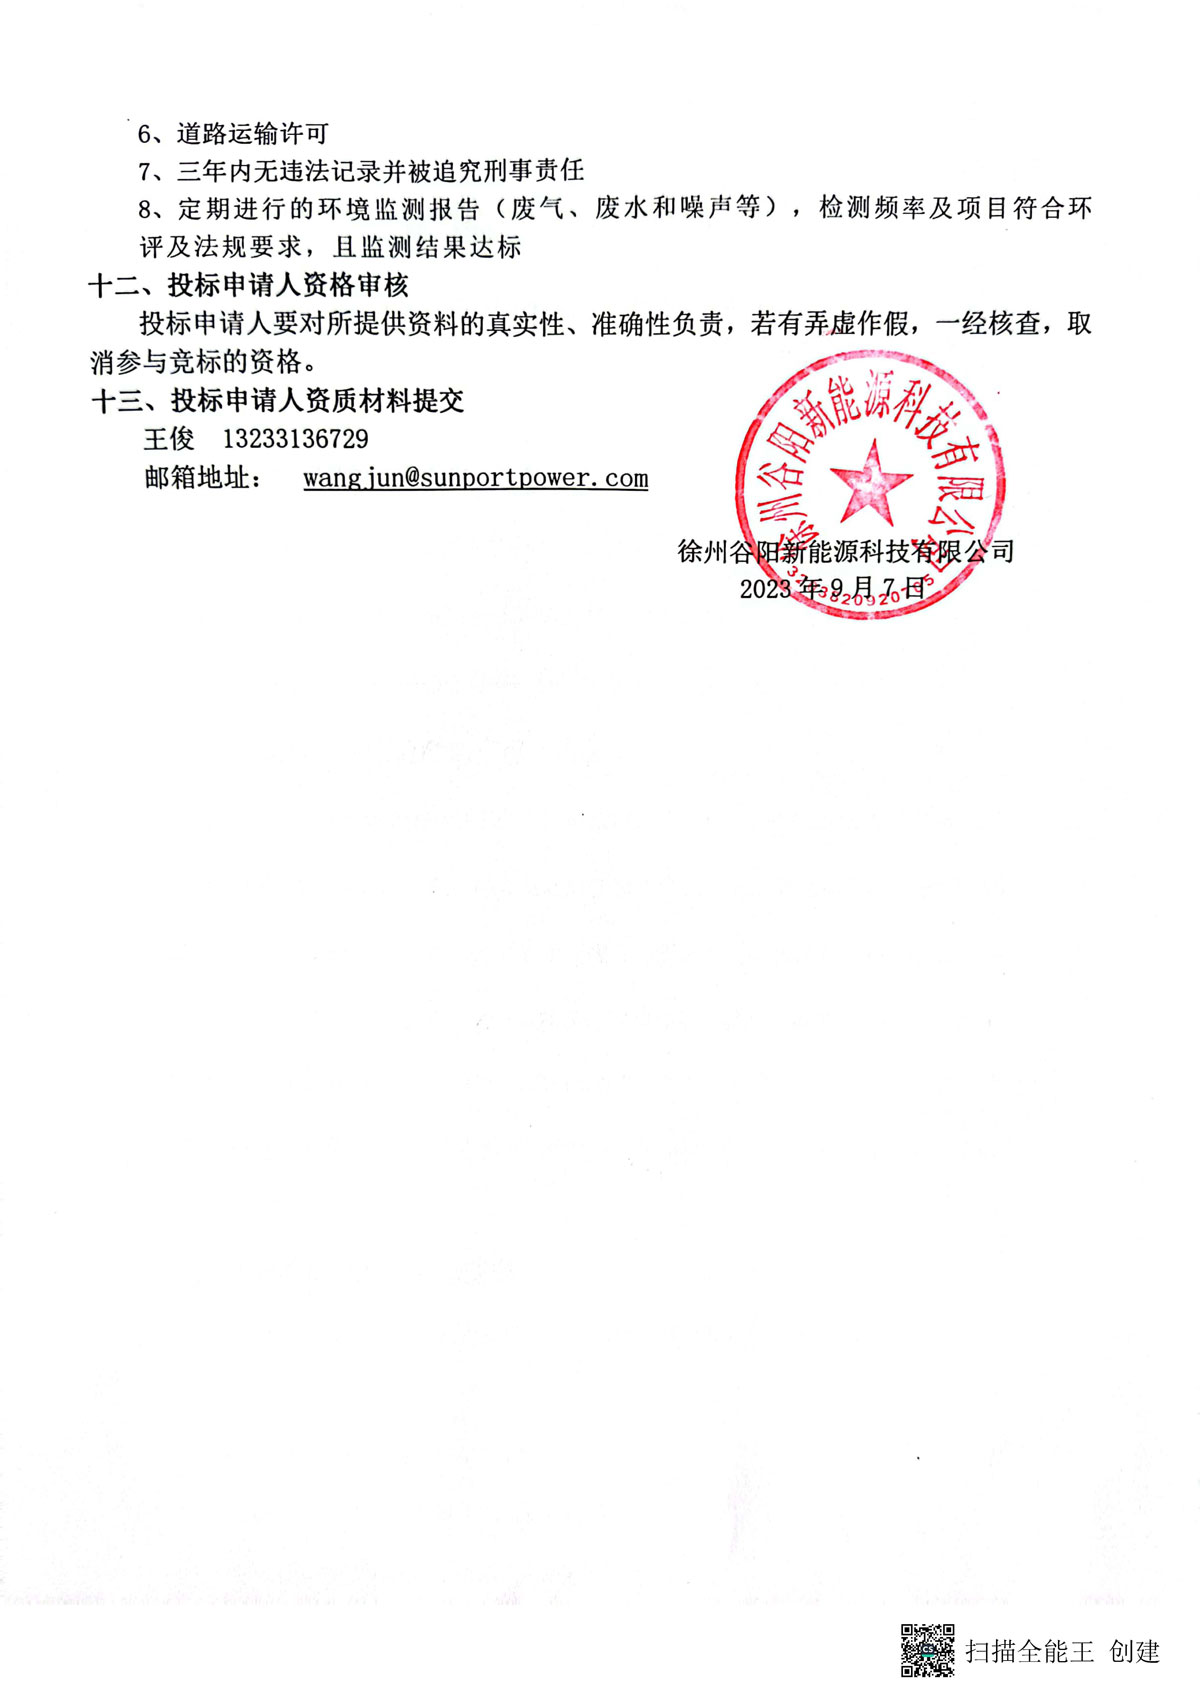 徐州谷阳新能源科技有限公司现对含氟污泥年度处置实施招标